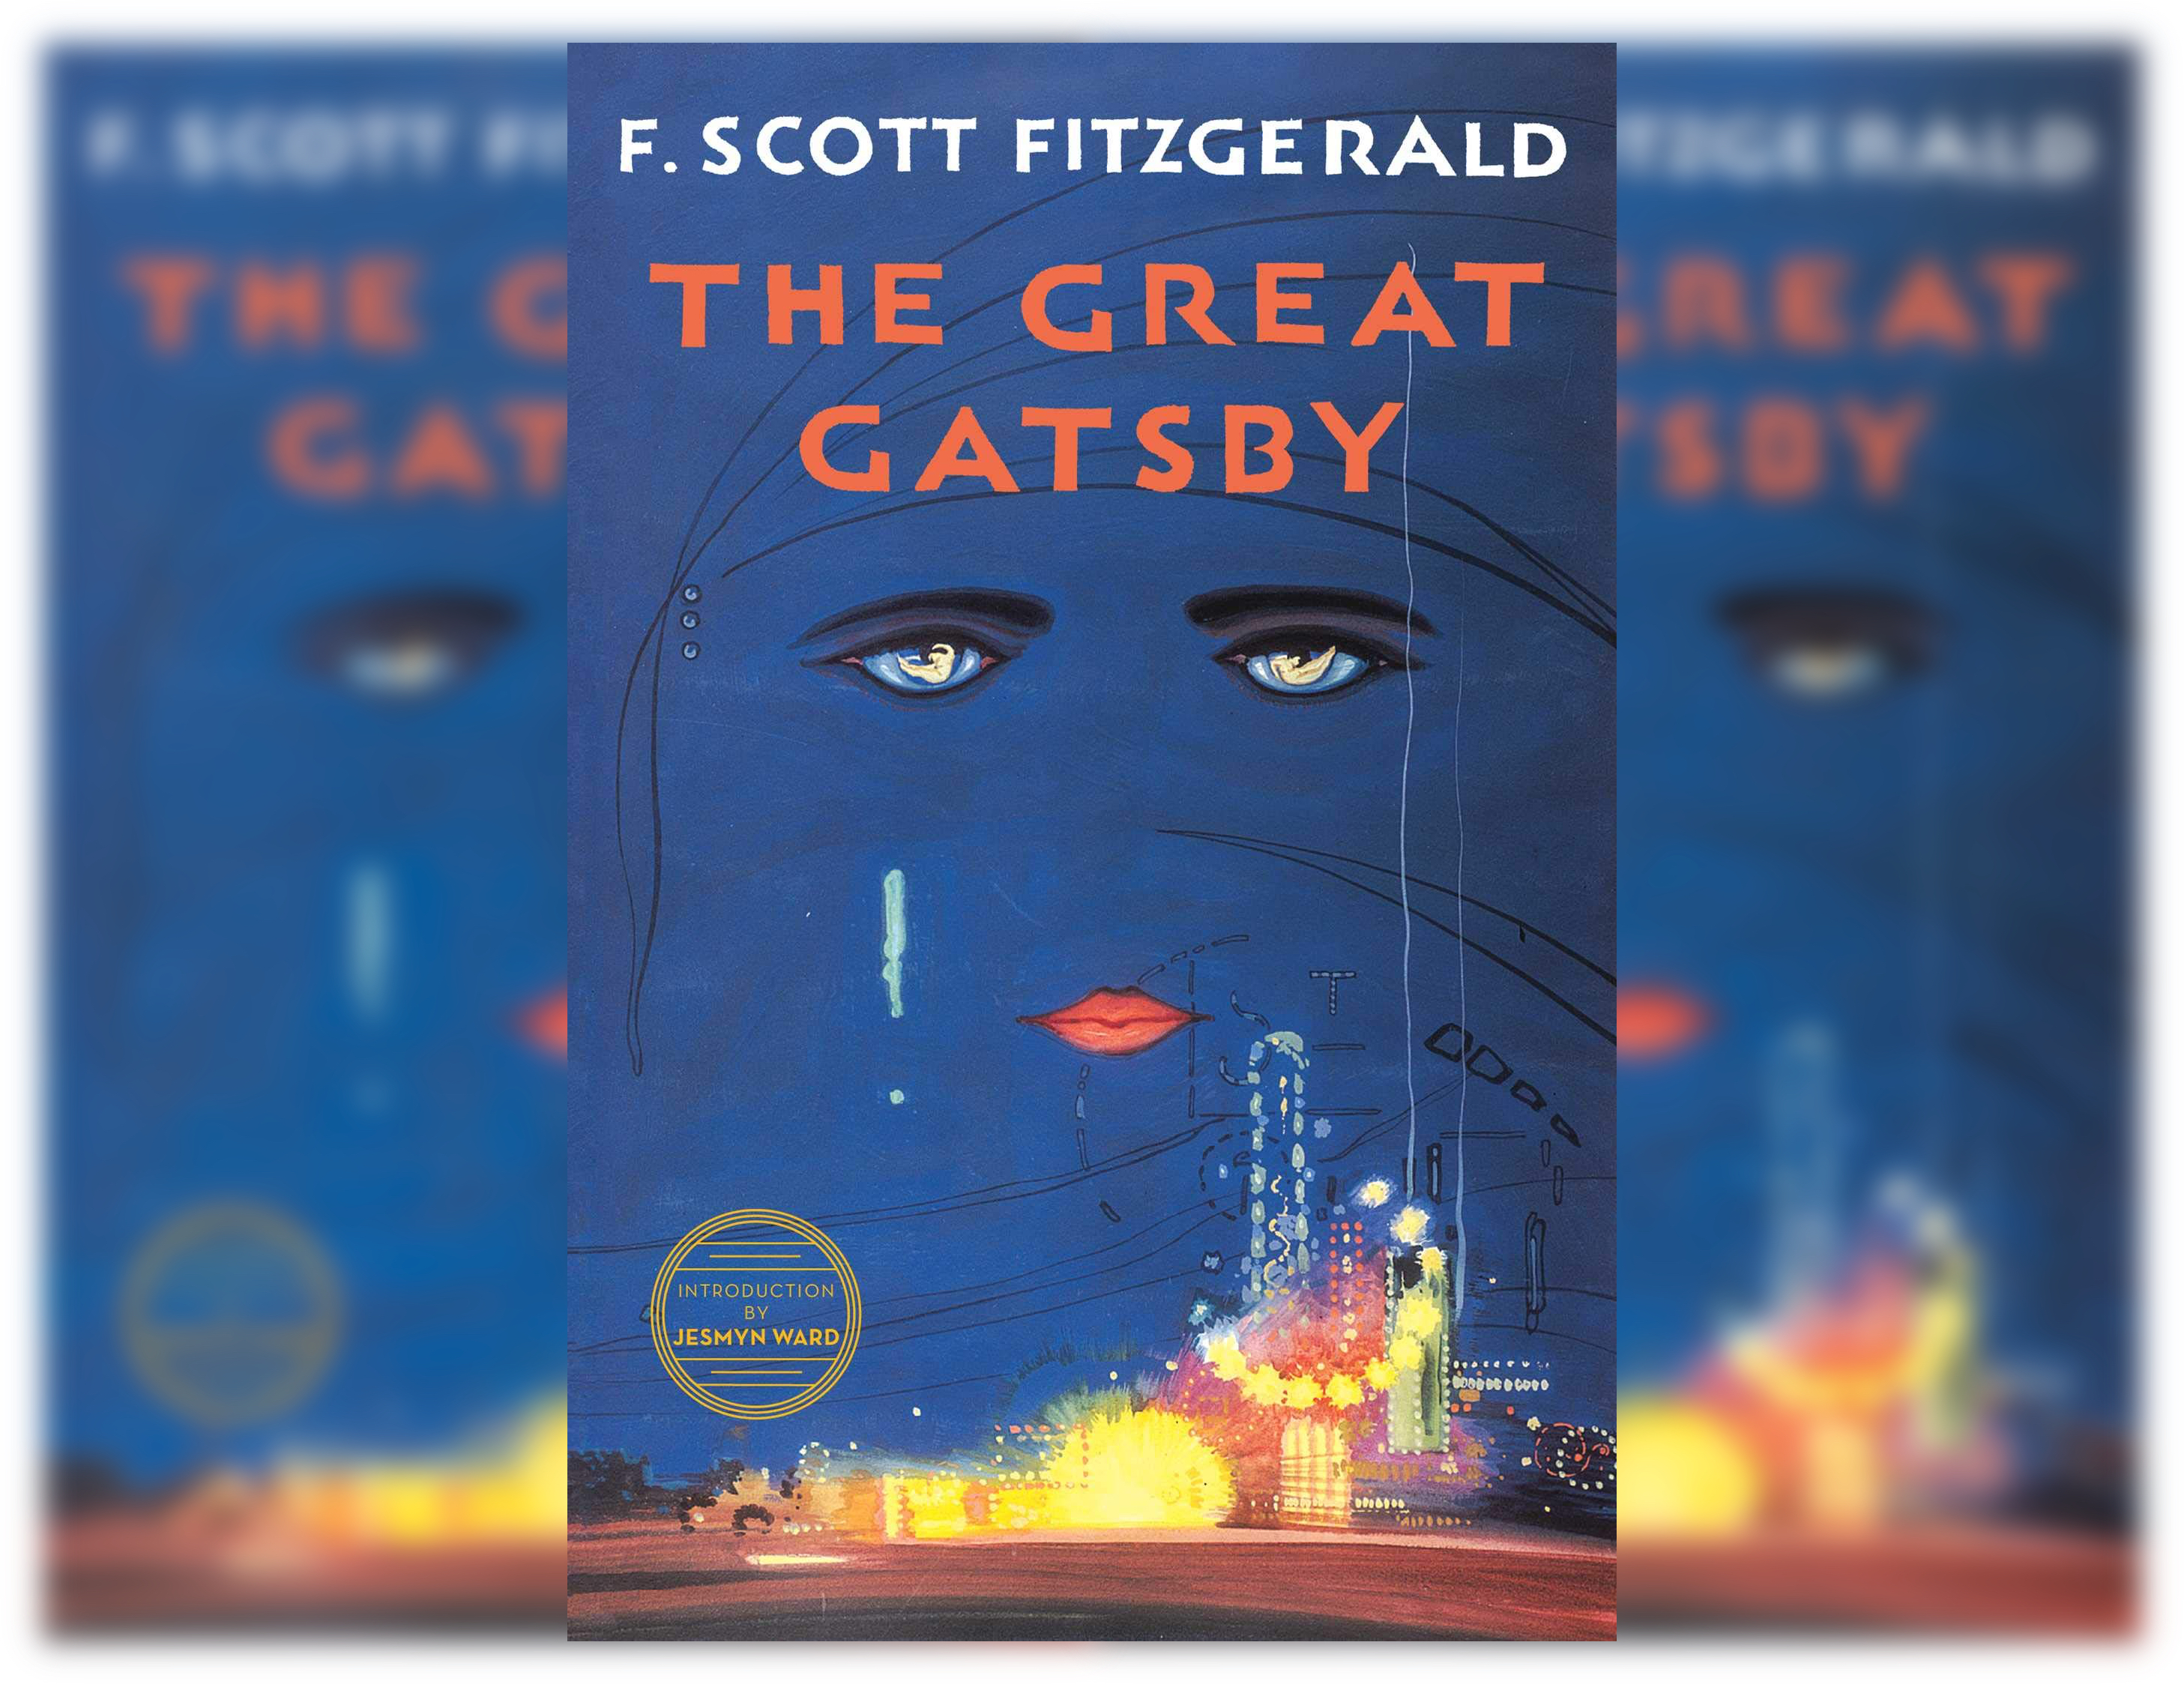 Gatsby Le Magnifique - Francis Scott Fitzgerald - E-book